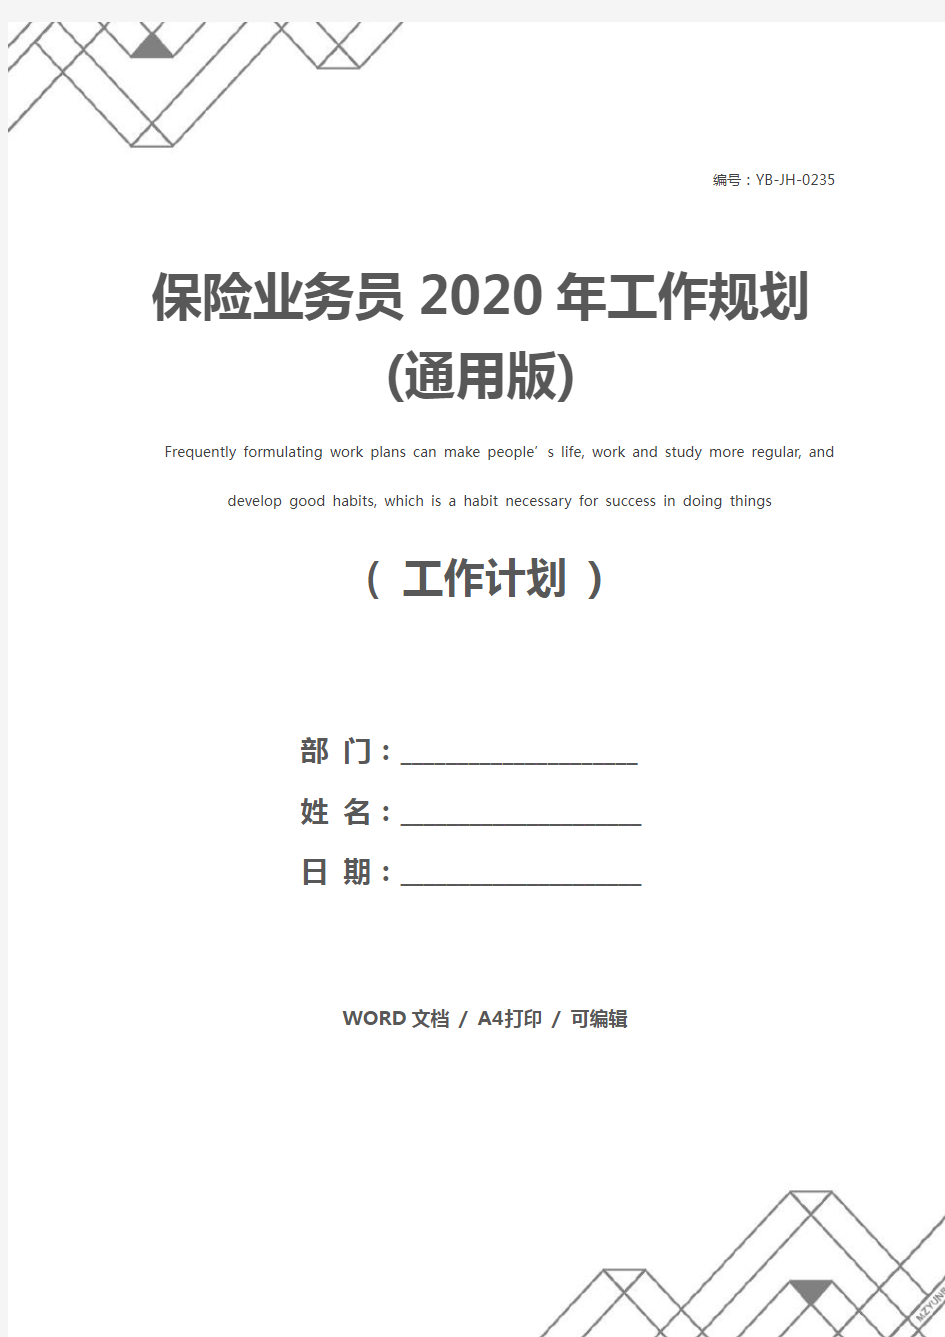 保险业务员2020年工作规划(通用版)